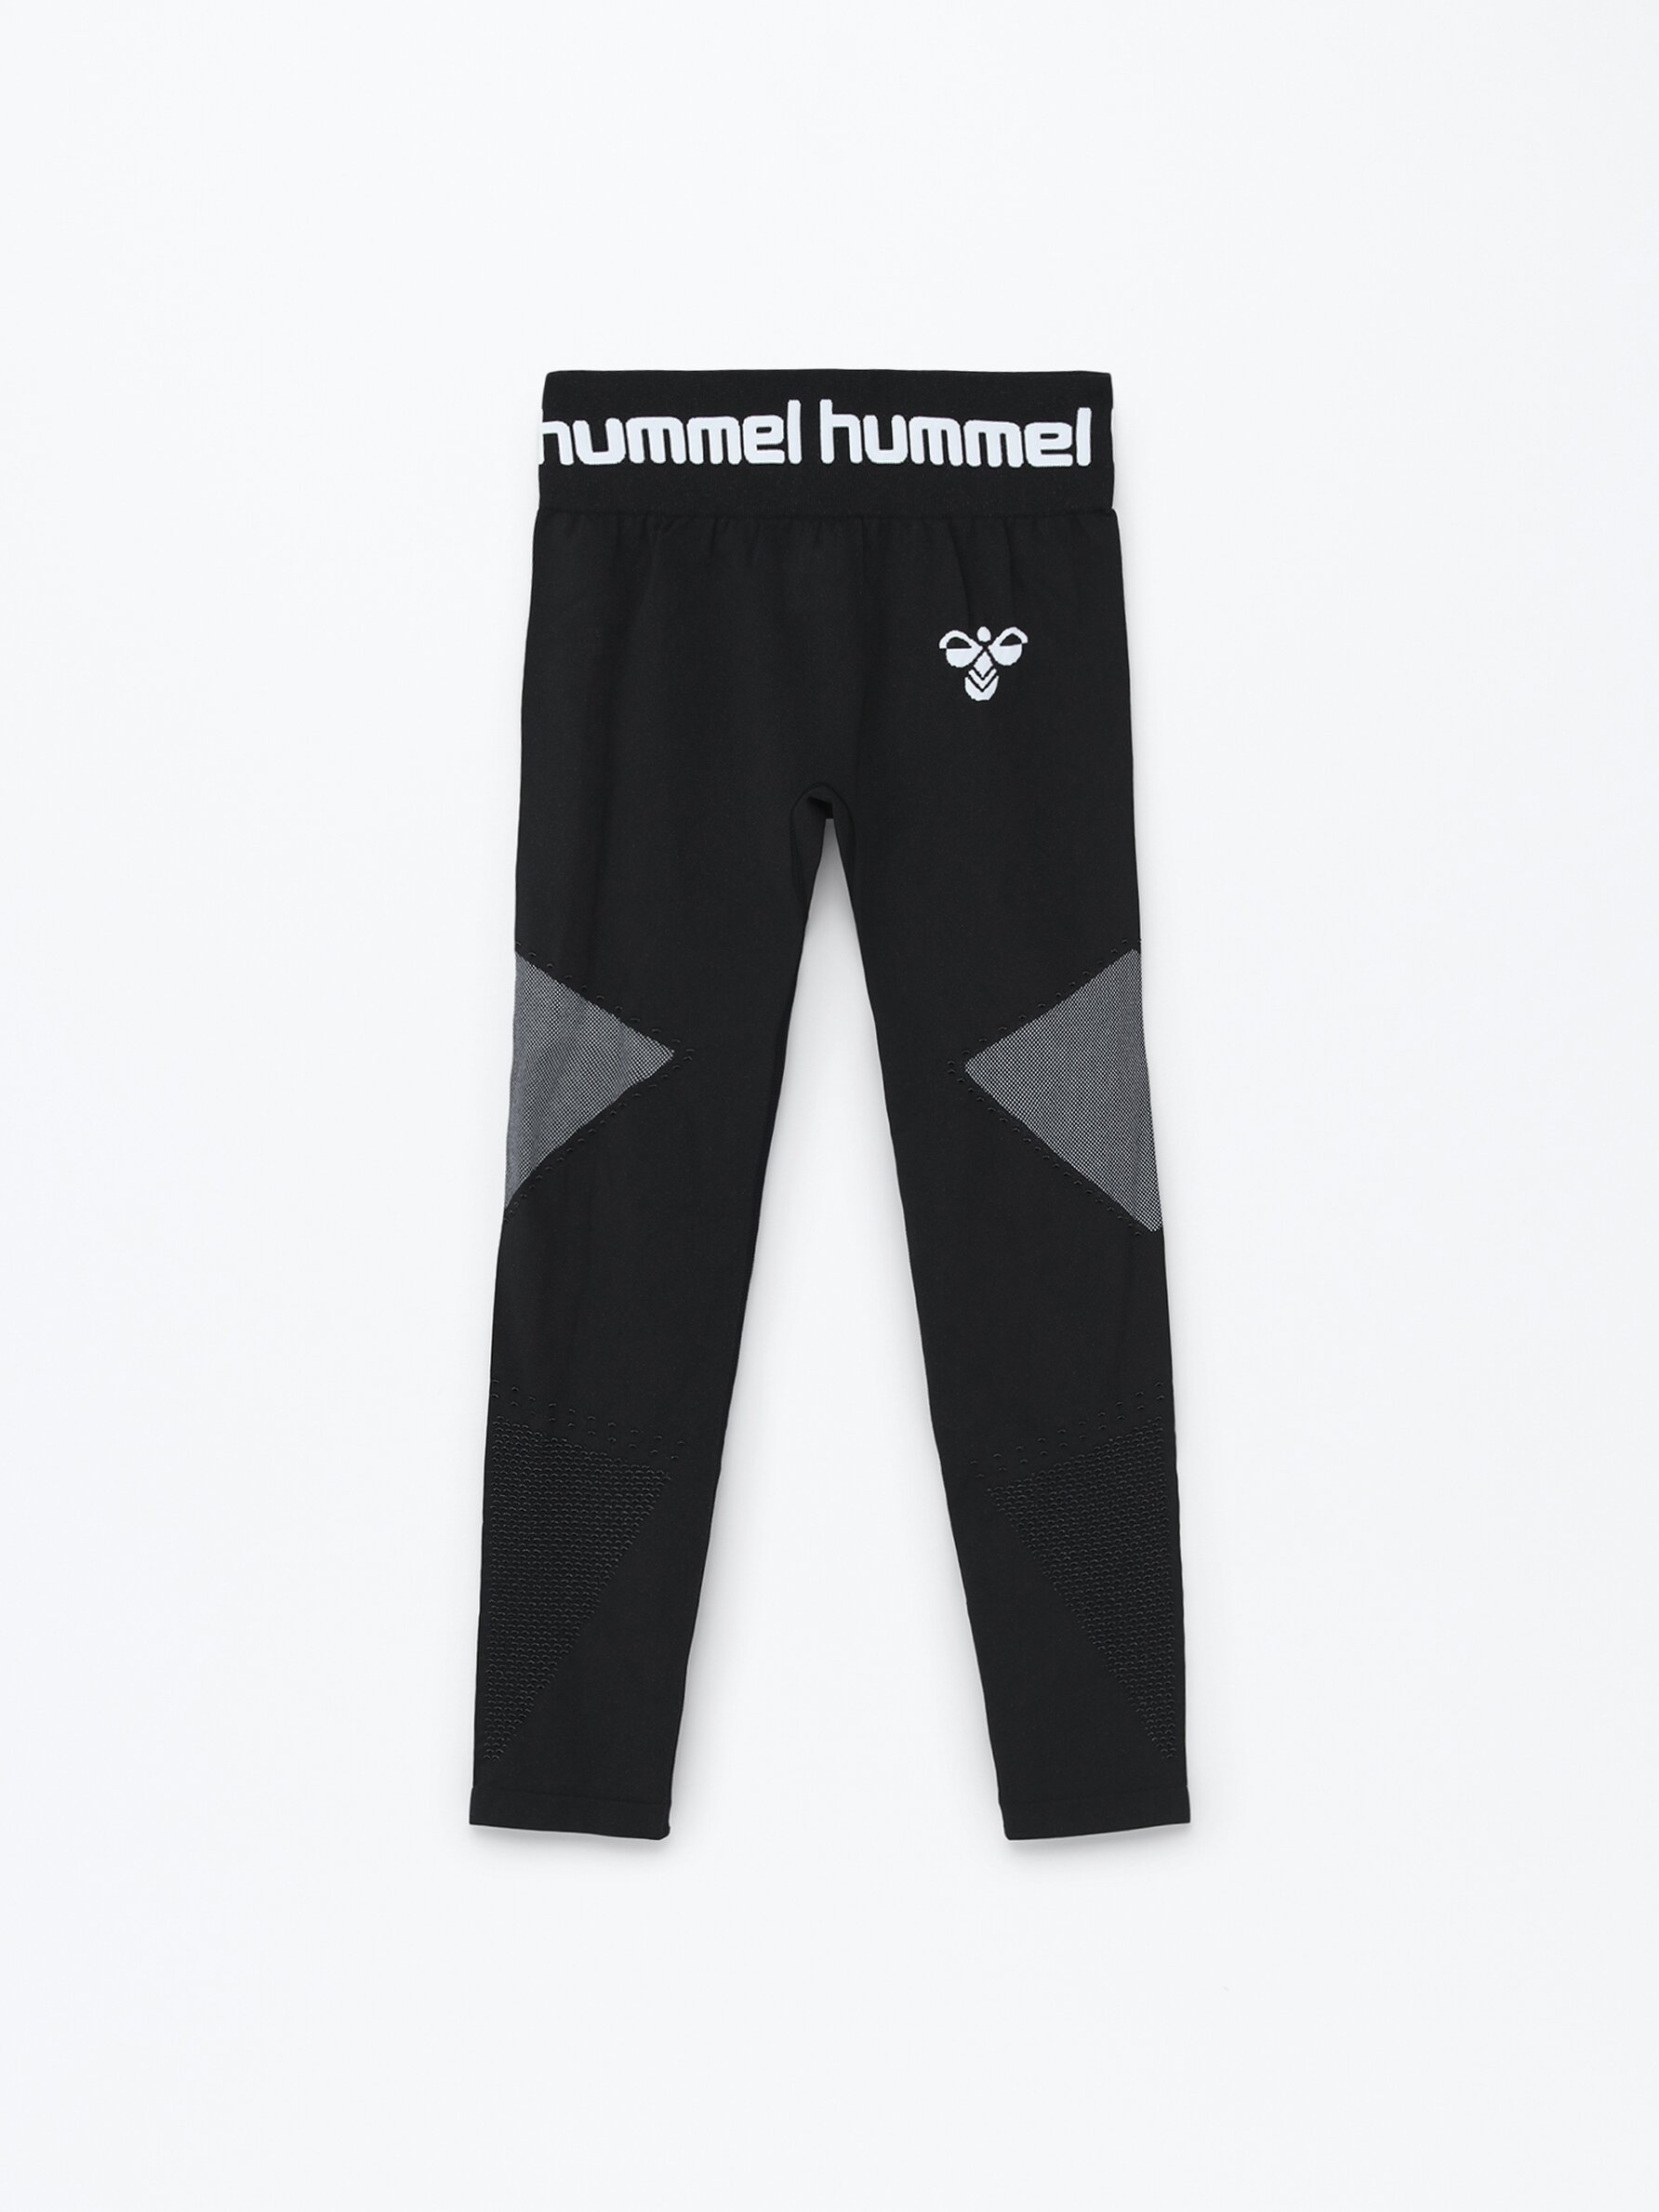 - | x Lefties Seamless - Lefties Woman Bras - CLOTHING - - Hummel leggings Turkey Sportswear Sports